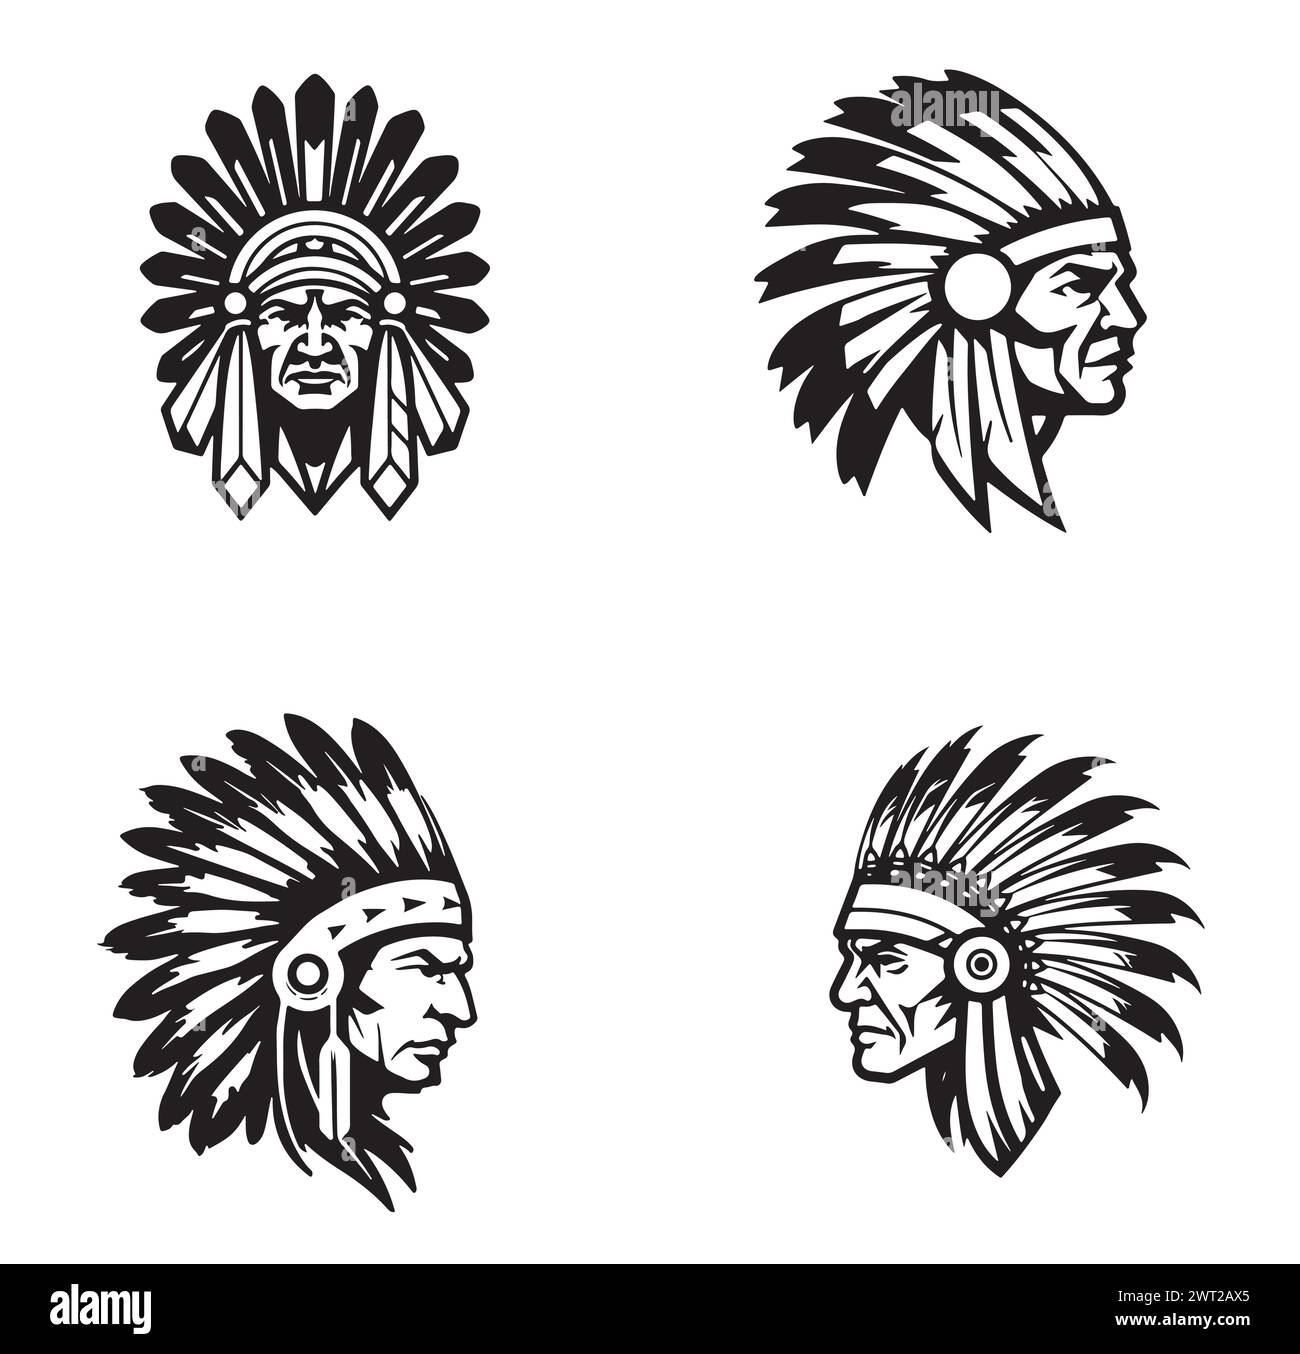 Profil du chef indigène des Indiens d'Amérique. Logo de l'équipe de sport mascotte. Logo d'illustration vectorielle Illustration de Vecteur